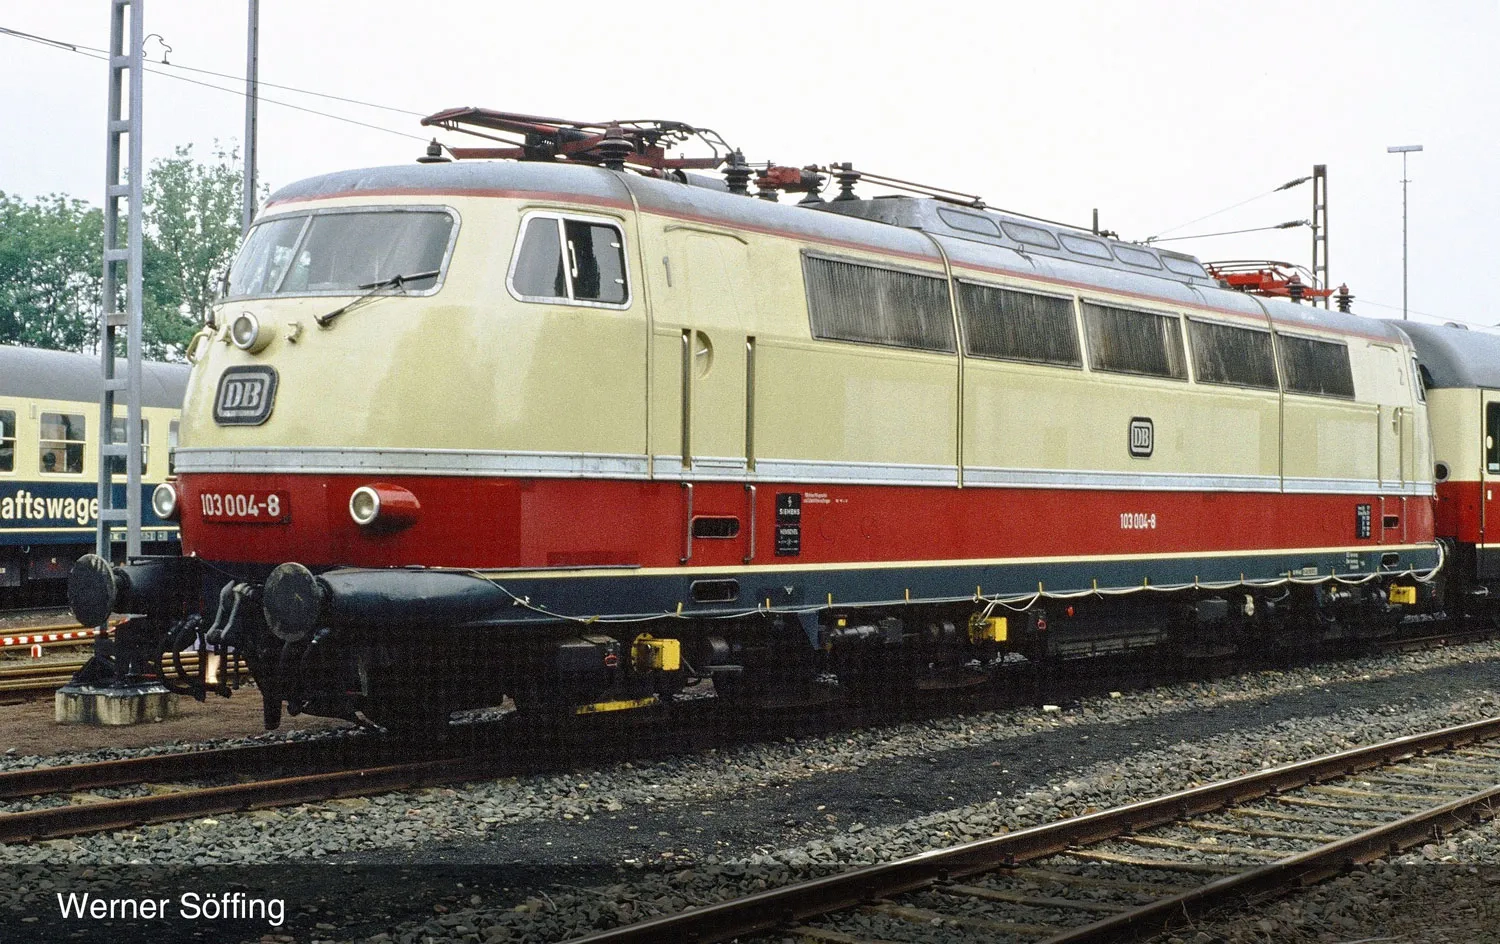 DB, Elektrolokomotive 103 004 in beige/roter Lackierung mit dunkelgrauem Dach, Einholmstromabnehmer, Ep. IV, mit DCC-Sounddecoder